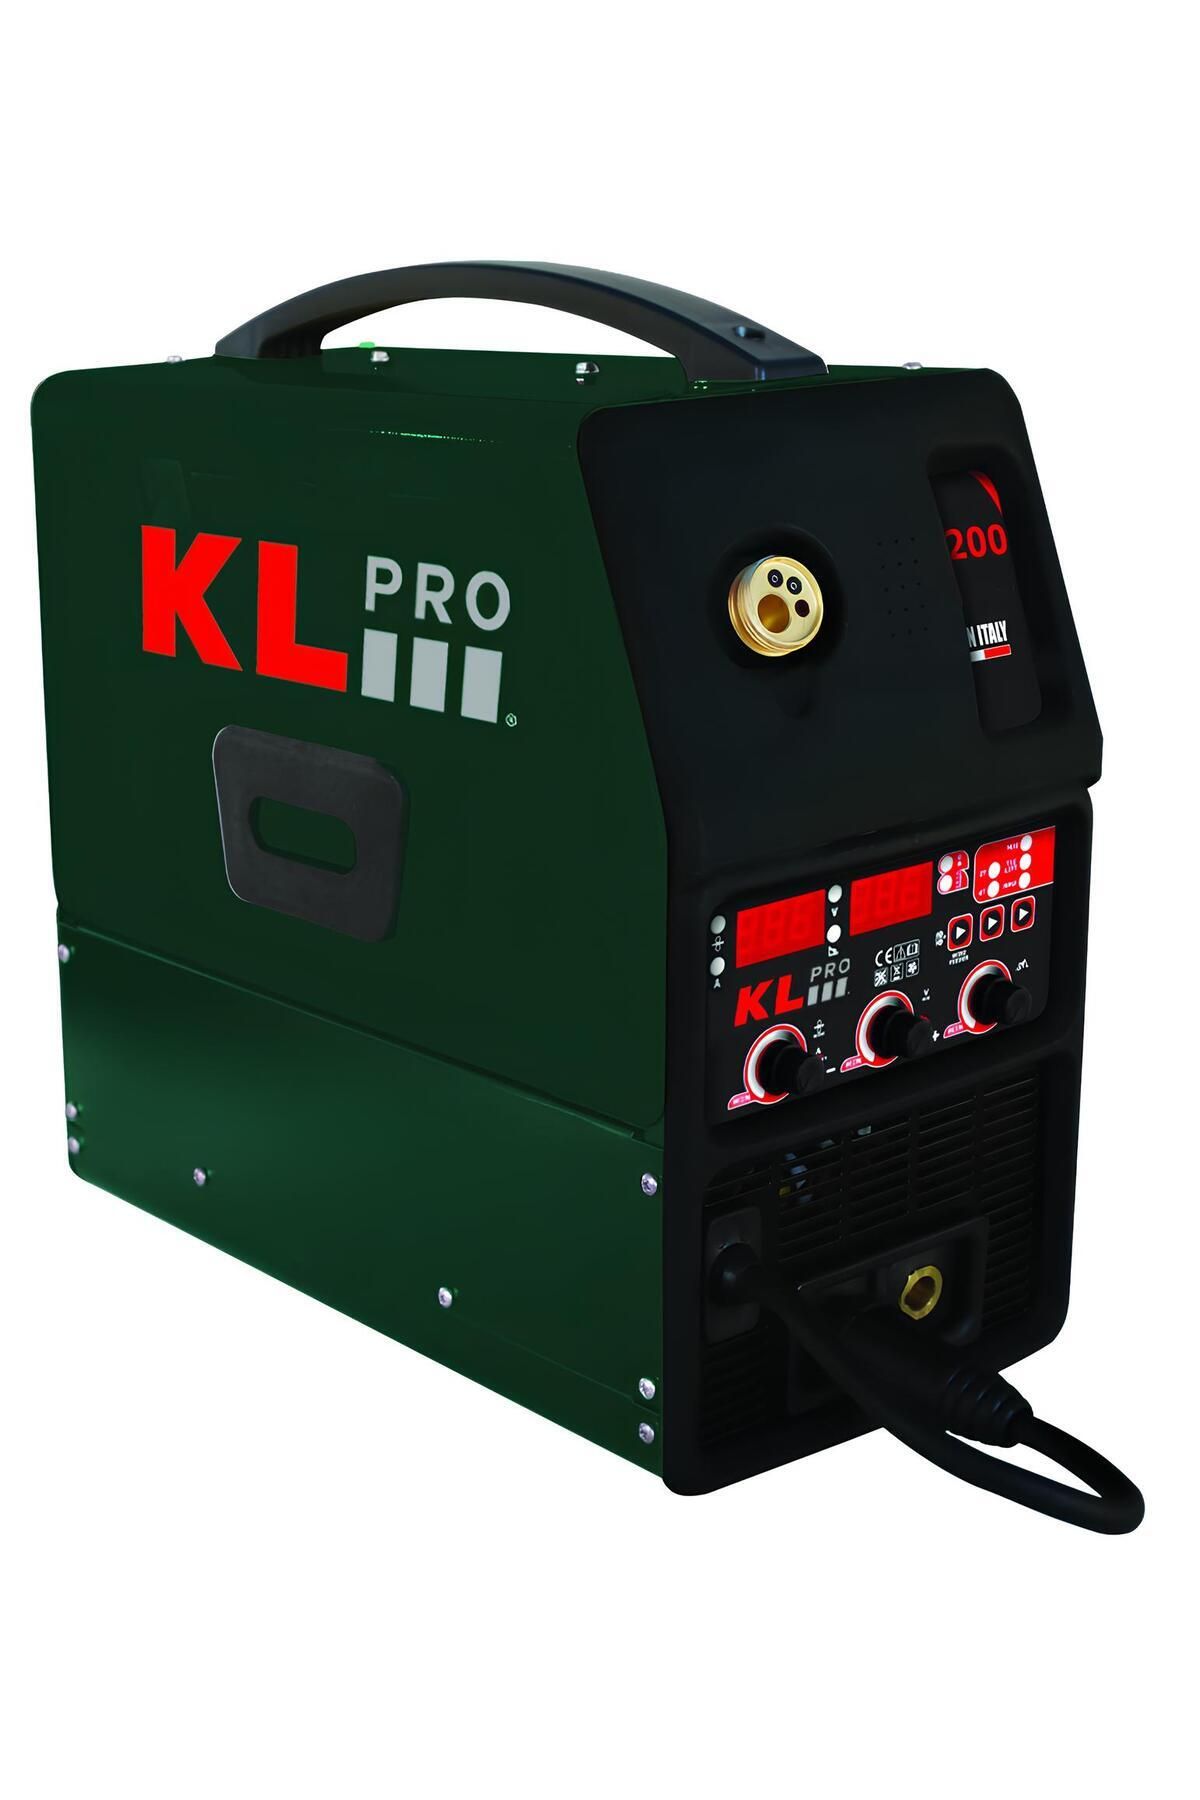 KLPRO KLMIG200 200 Amper MMA İnverter Gazlı ve Gazsız Gaz Altı Kaynak Makinesi